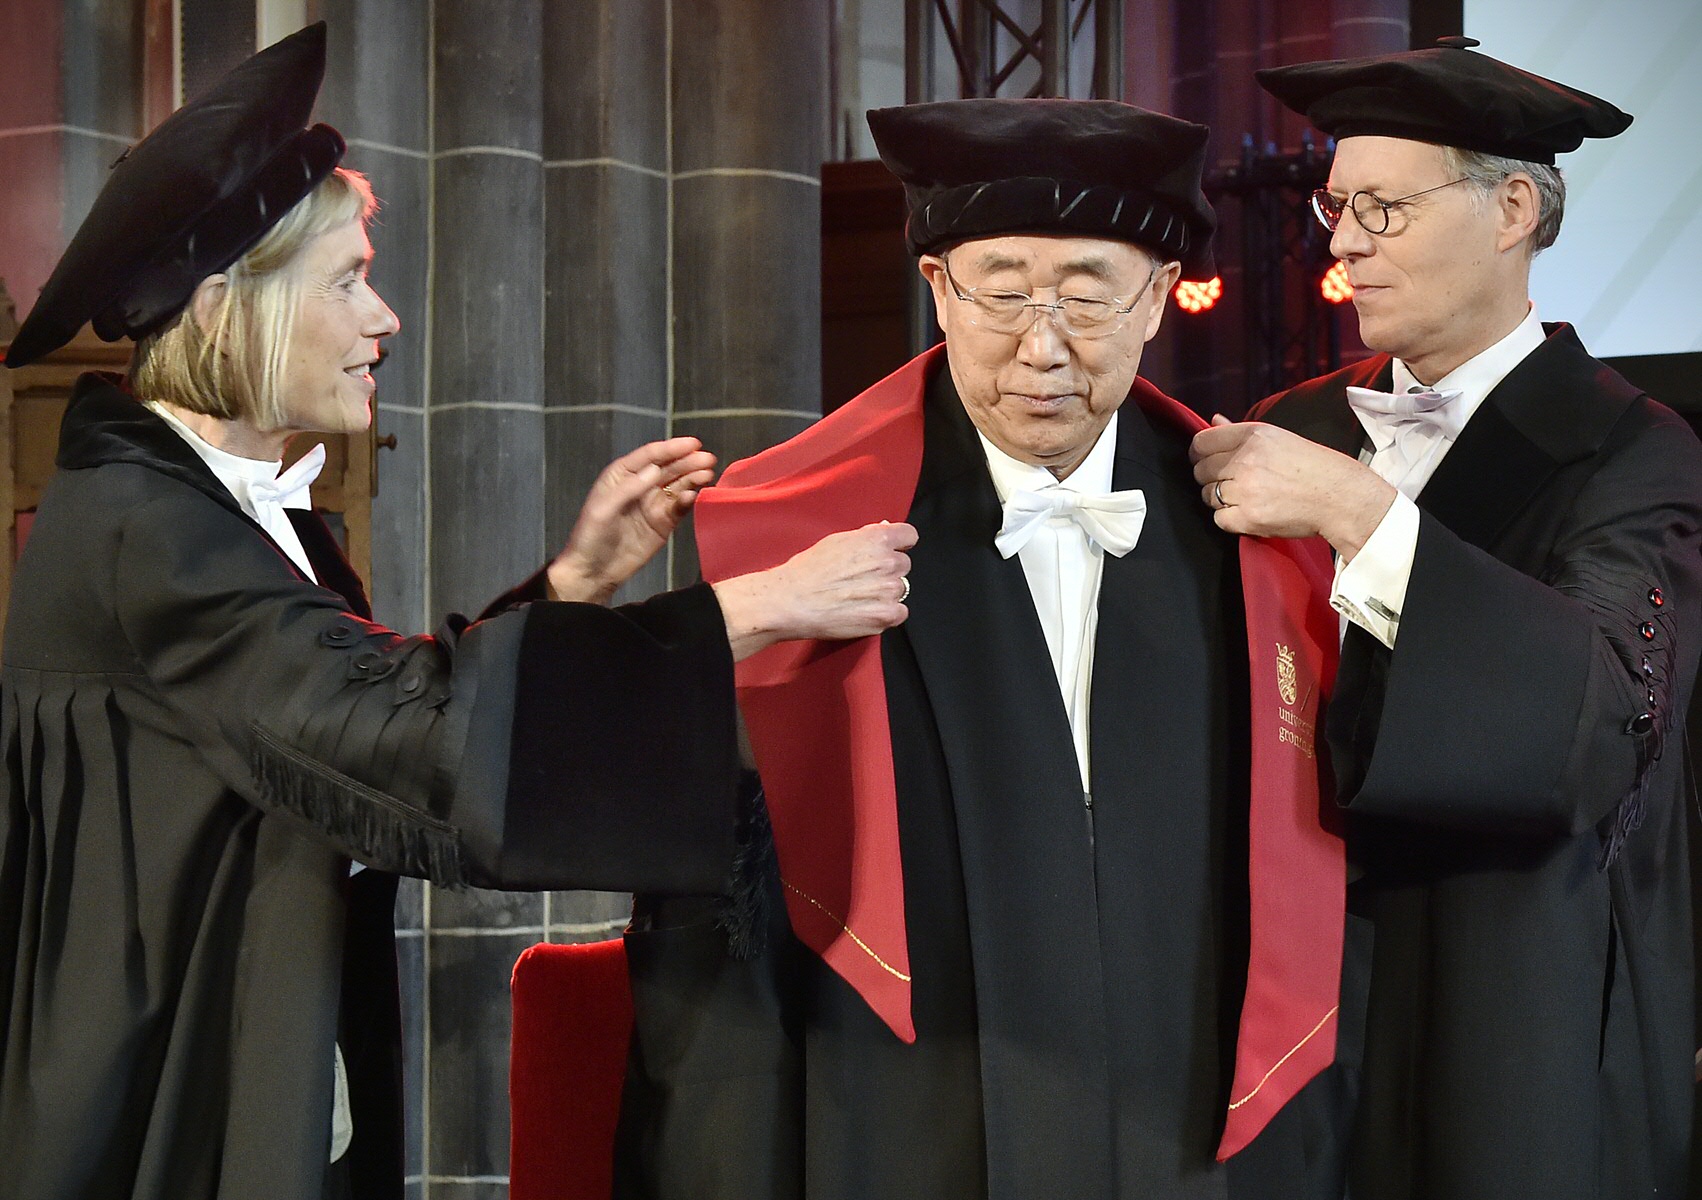 Ban Ki-moon en Prof. dr. E. (Elmer) SterkenBan Ki-moon and Prof. dr. E. (Elmer) Sterken